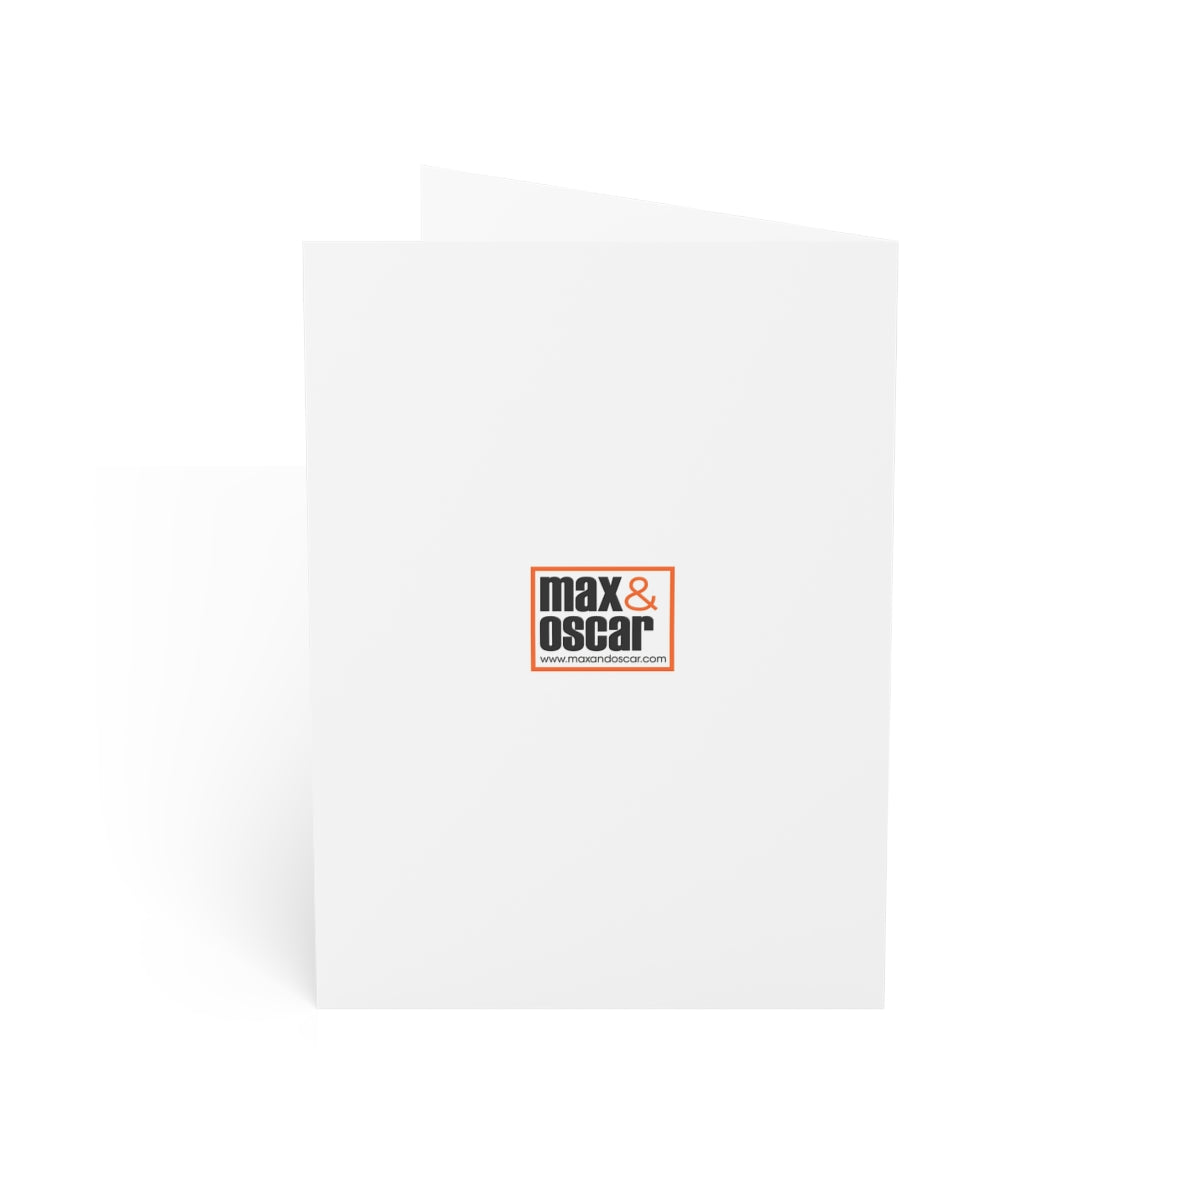 Dublin Folded Matte Notecards + Envelopes (10pcs)